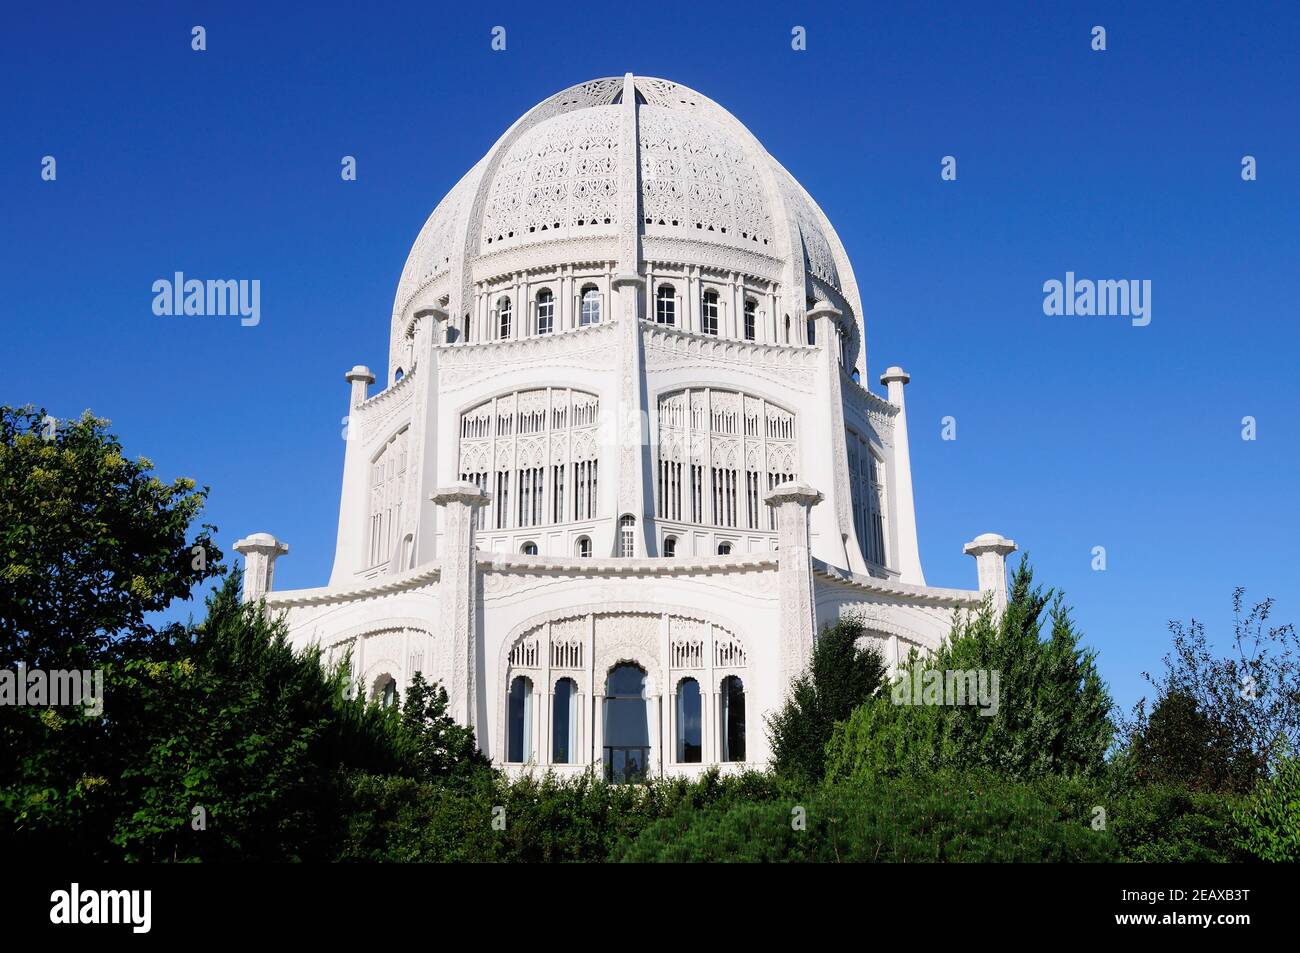 Wilmette, Illinois, Stati Uniti. Il Tempio di Bahai, uno di una manciata di templi in tutto il mondo e una pietra angolare per la fede Bahai. Foto Stock